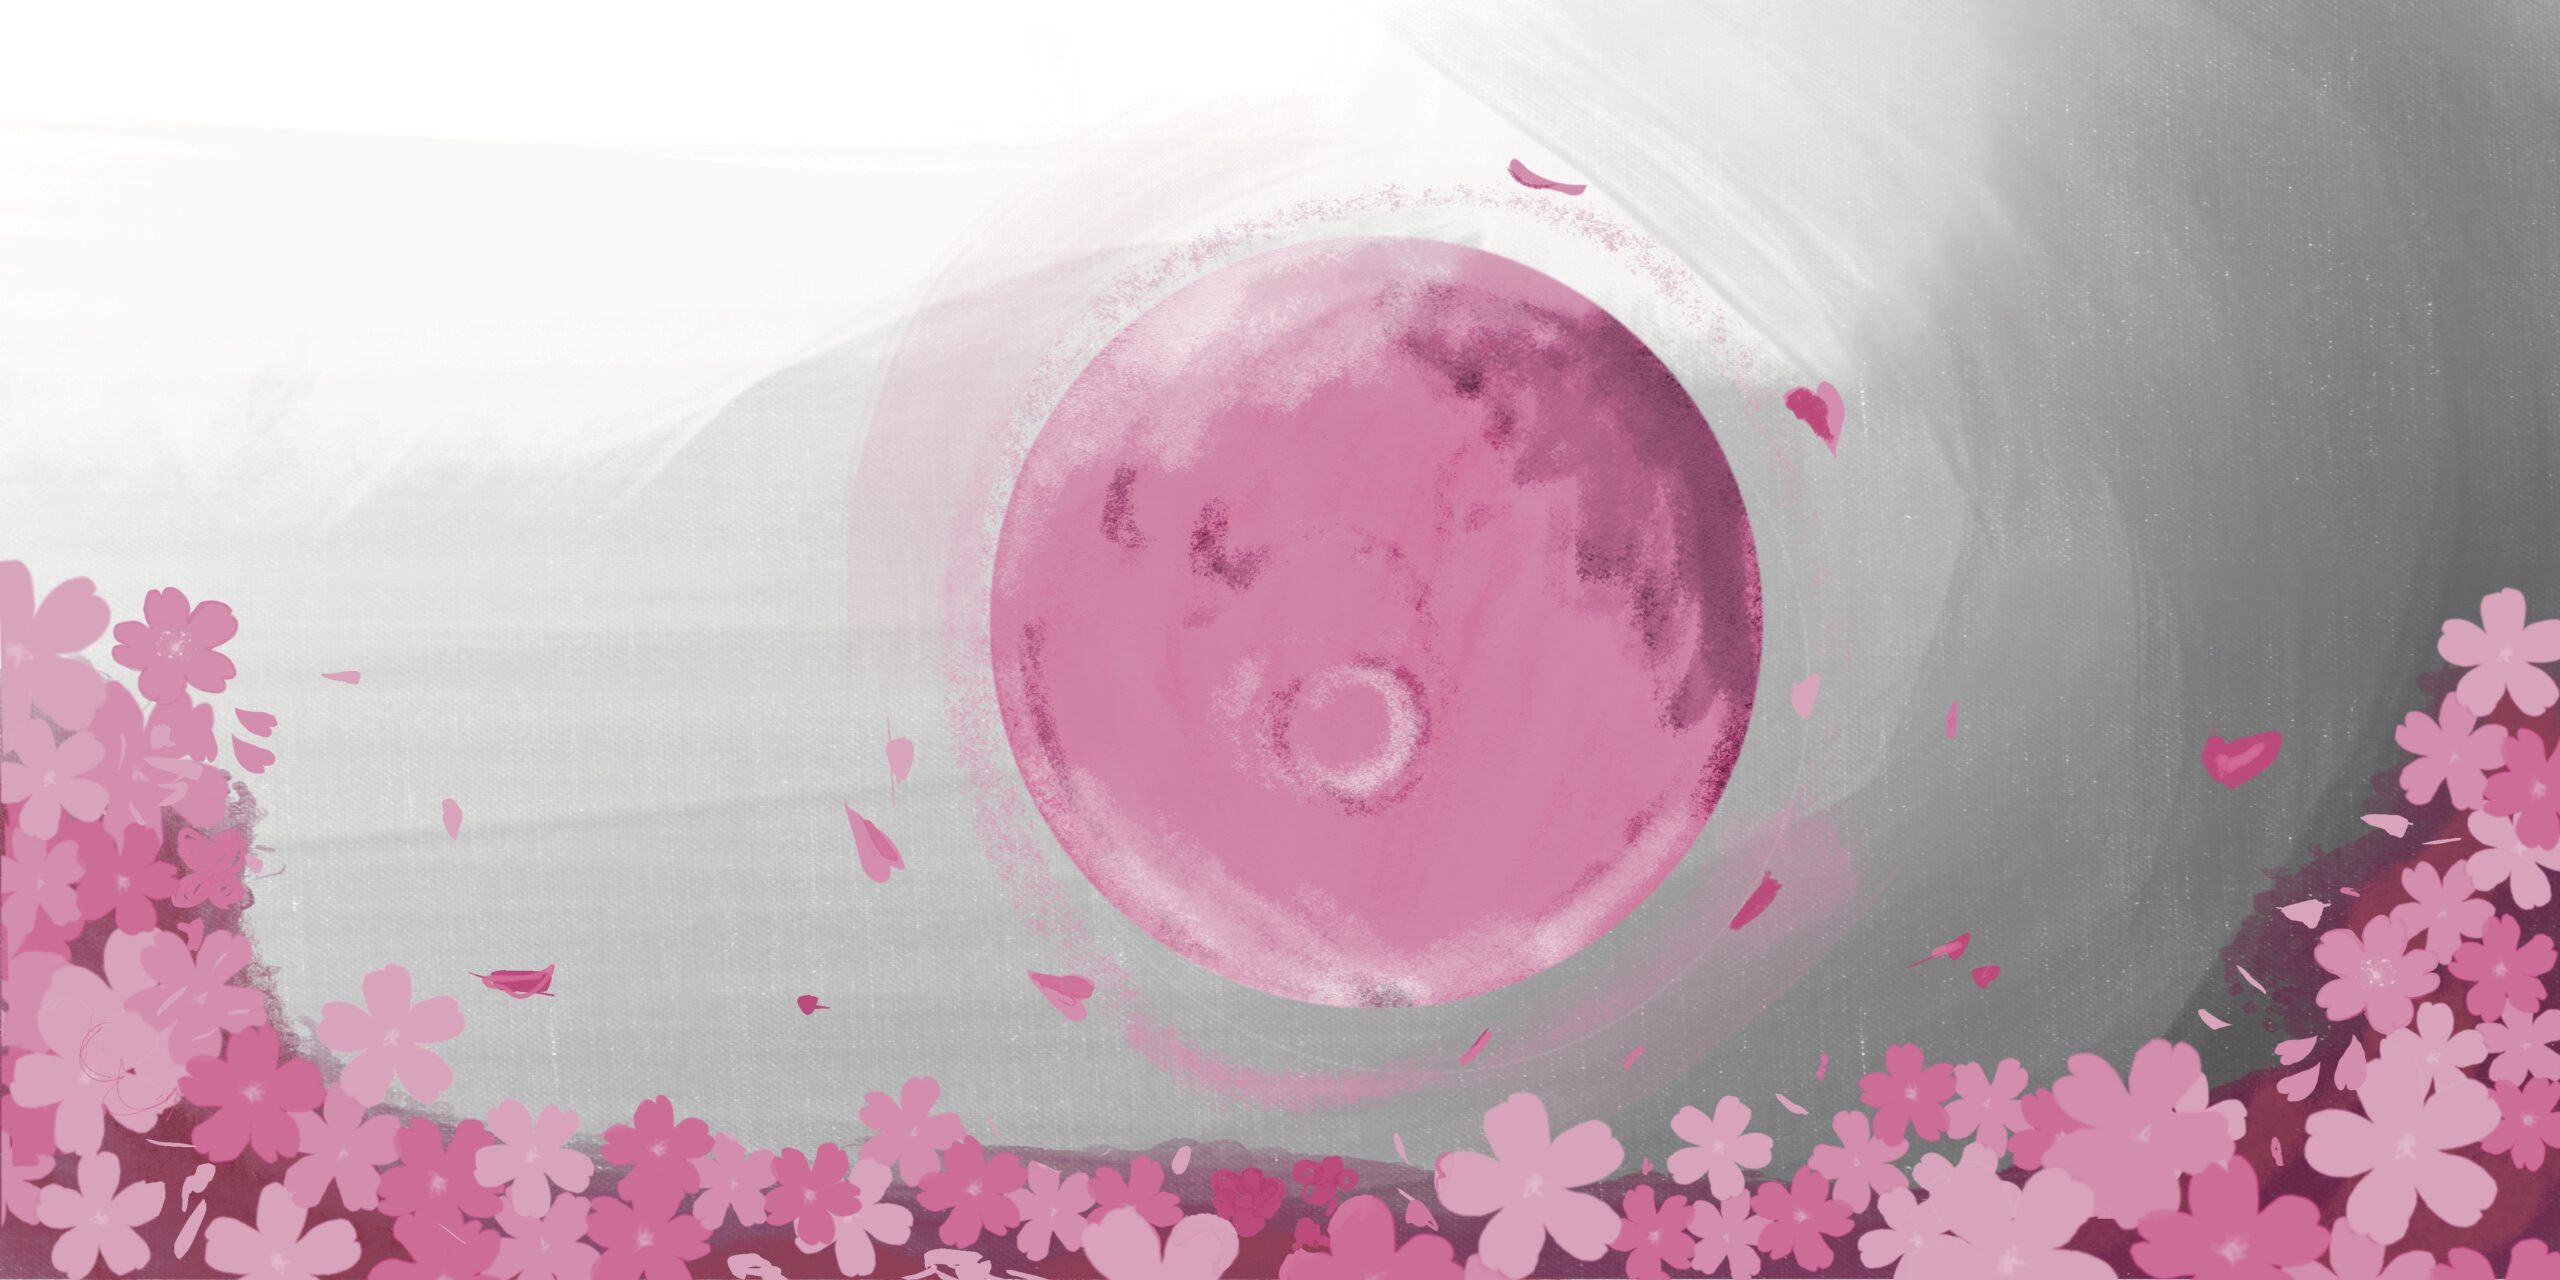 Volle maan ritueel april: Roze maan